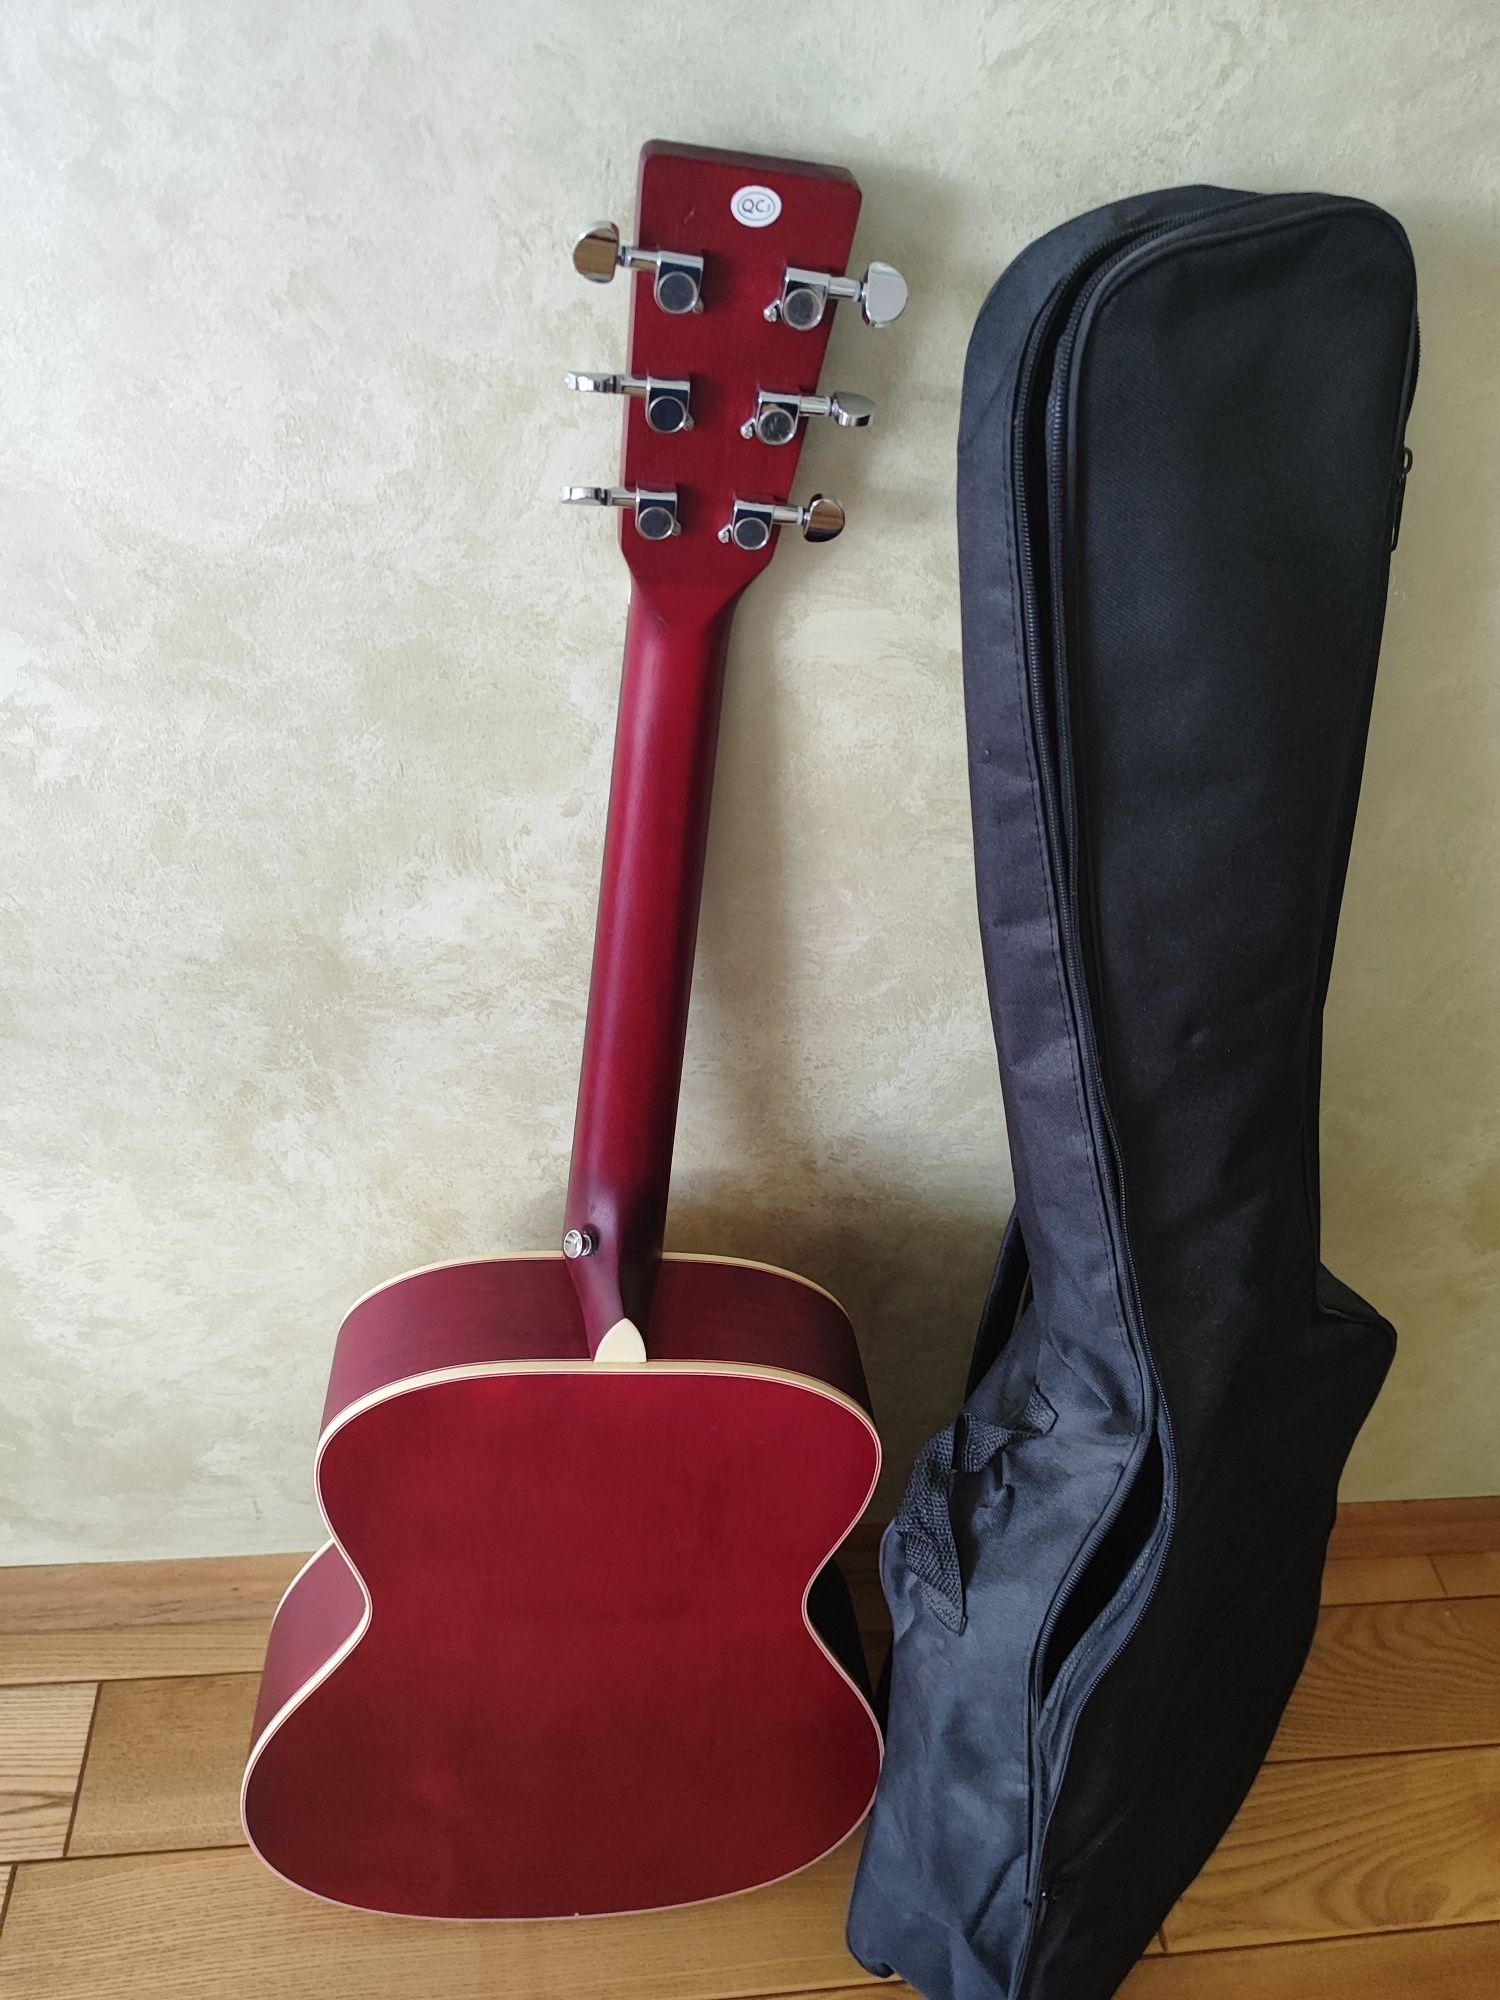 Акустична гітара SX SO204TRD. Нова, з чехлом.
SX SO204 TRD